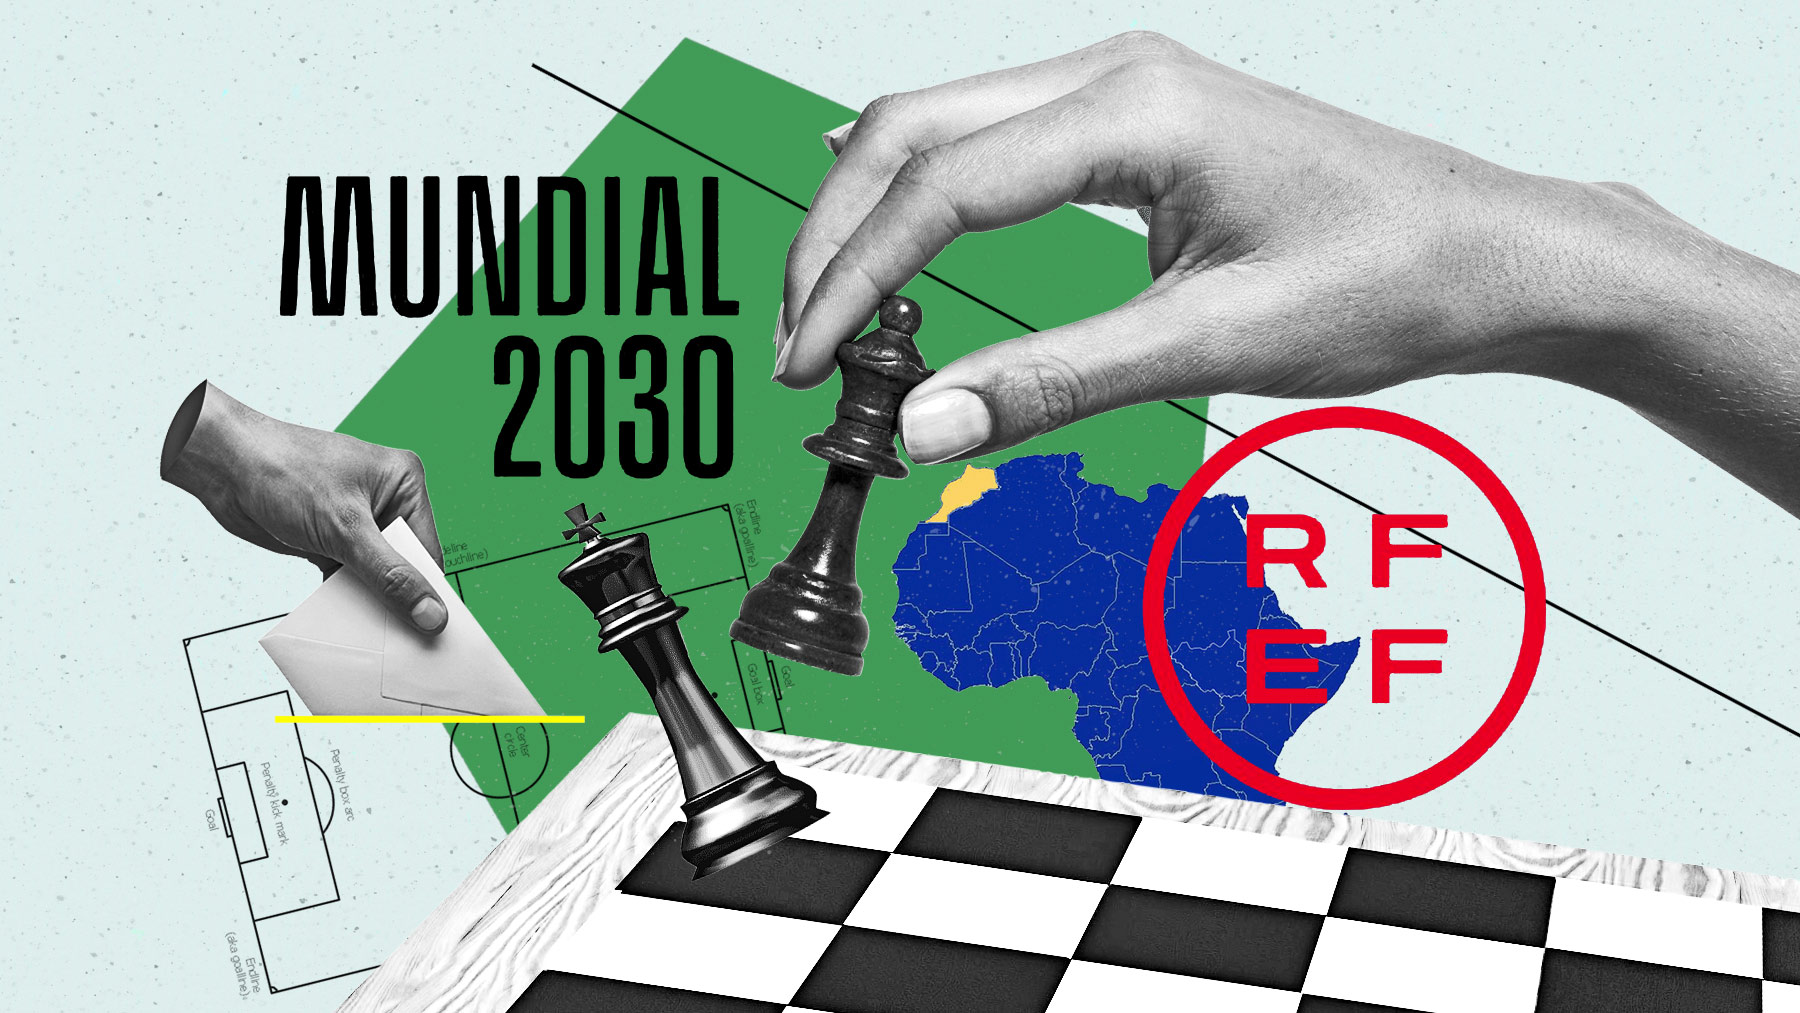 La candidatura ibérica ha mejorado ostensiblemente sus opciones de albergar el Mundial 2030.